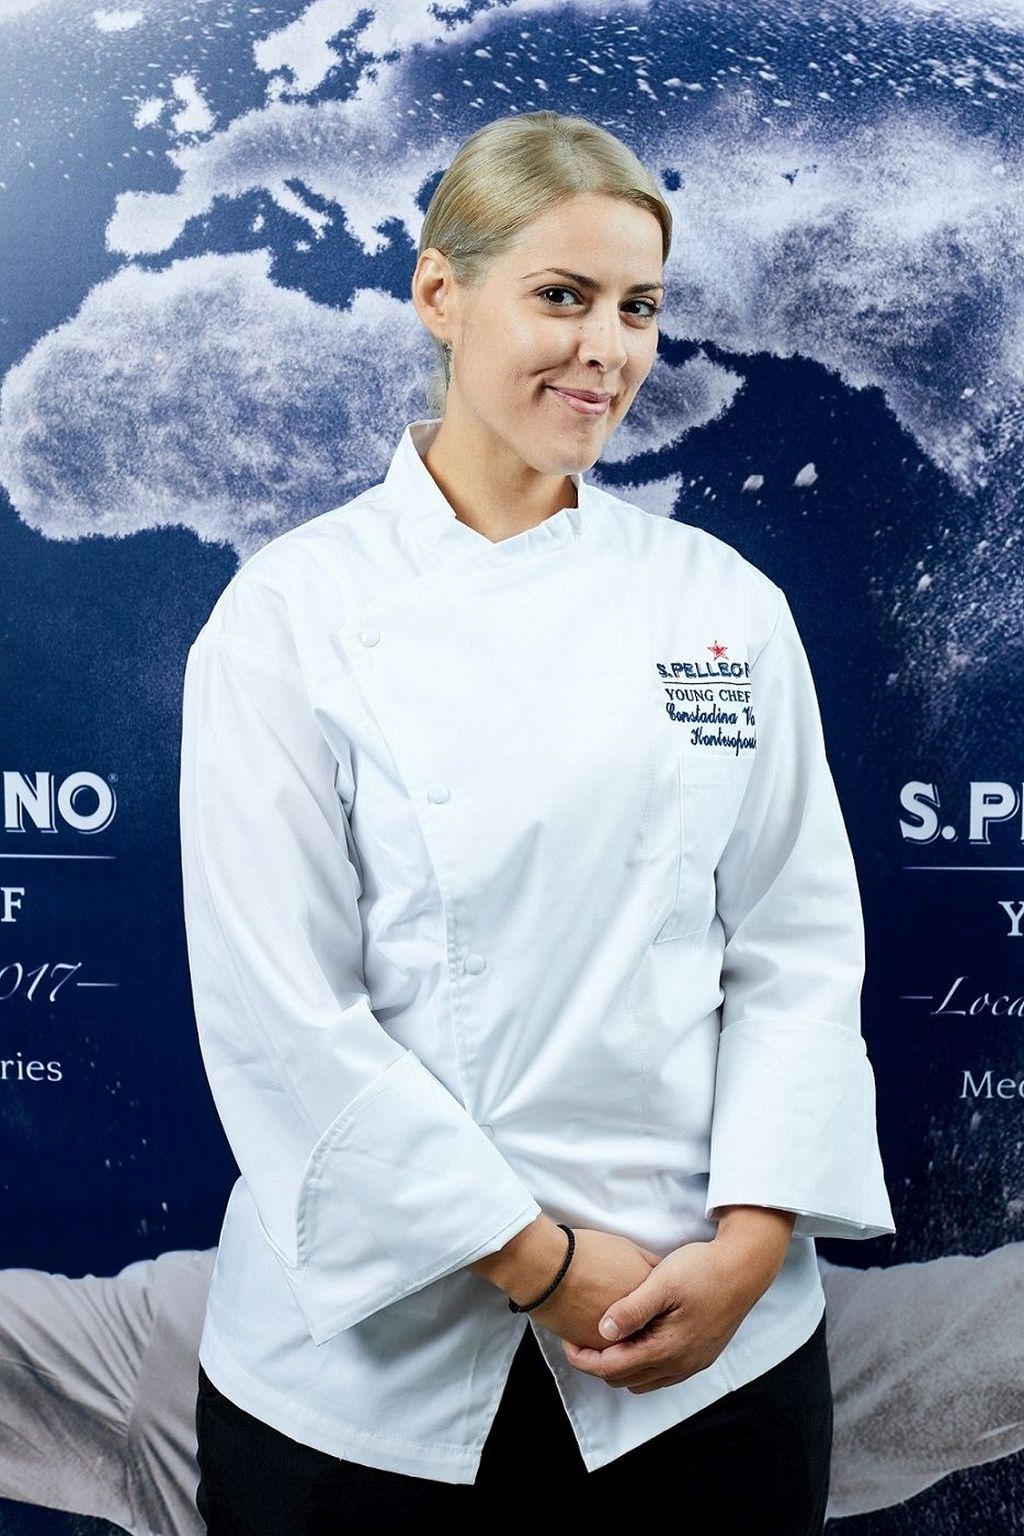 Μια Ελληνίδα σεφ στον τελικό του S.Pellegrino Young Chef 2018